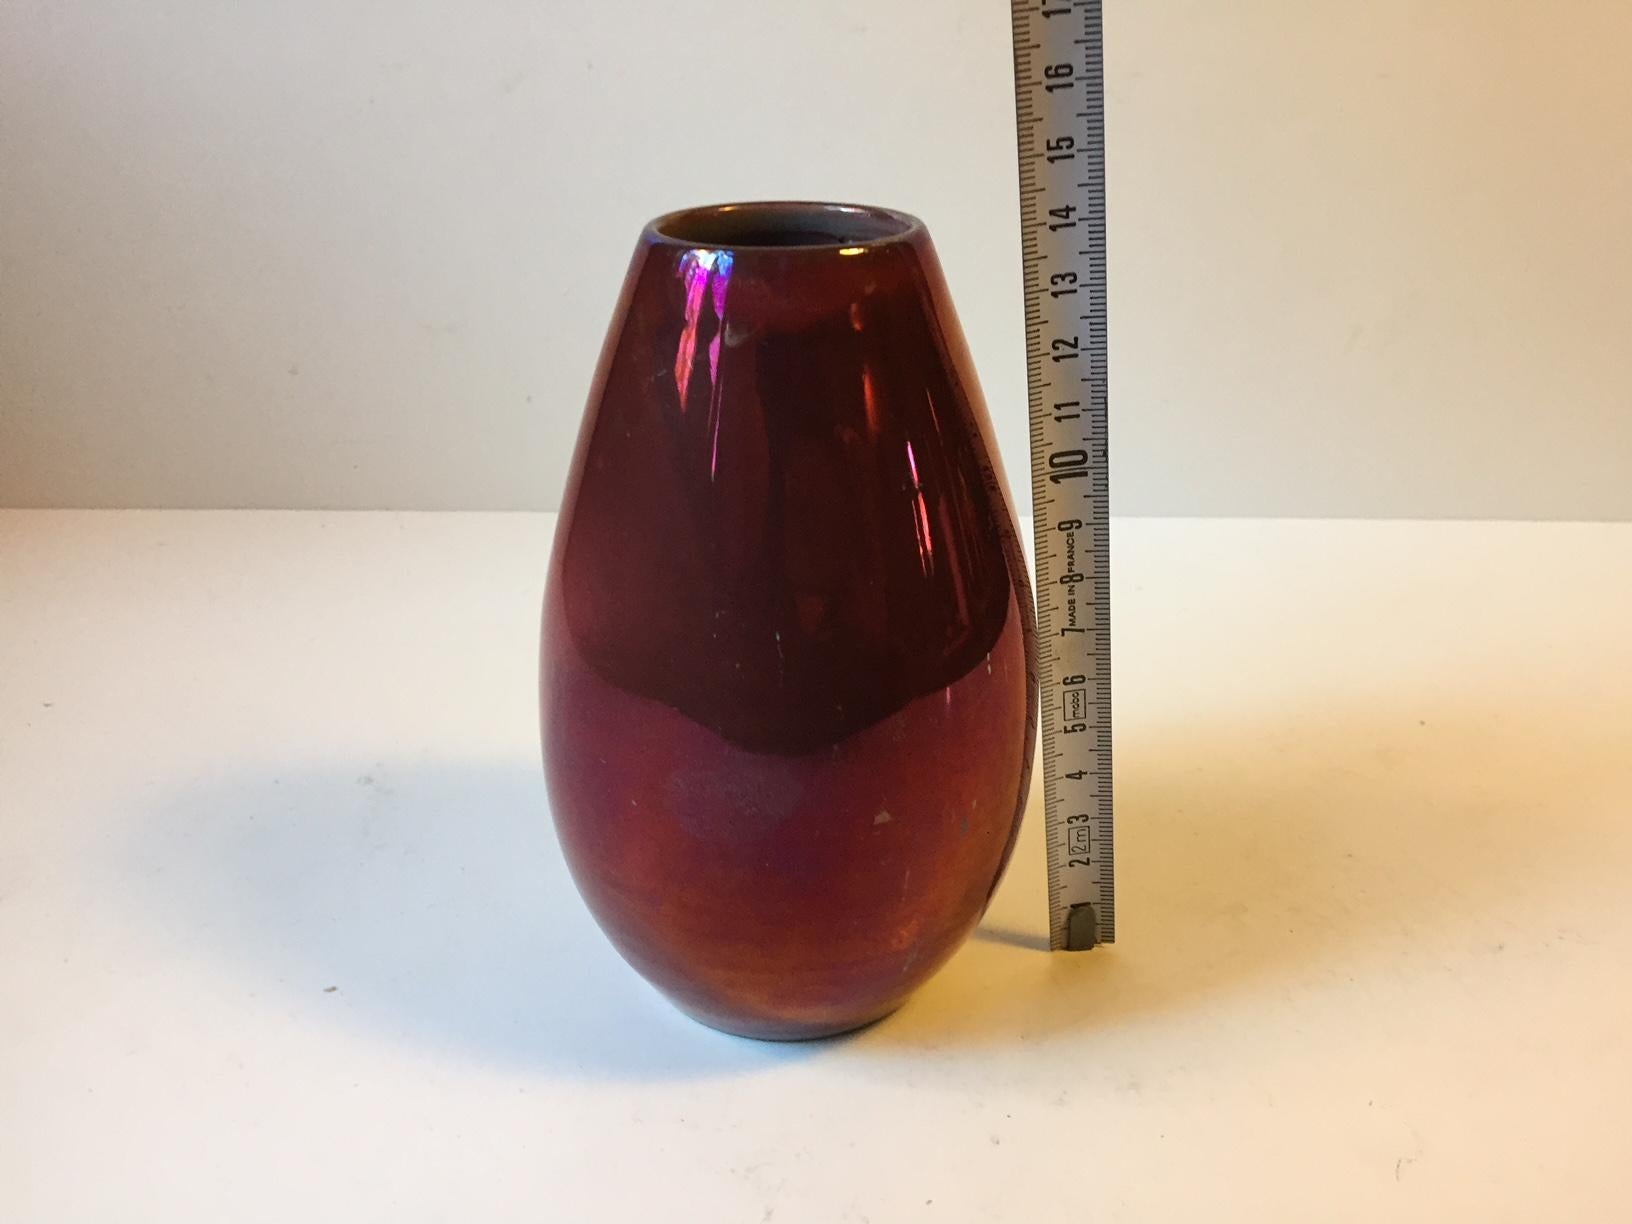 Einzigartige Vase in tiefroter Glanzglasur. Sie stammt von einem dänischen Keramiker namens Øbo, der in den 1930er Jahren eine Zeit lang bei Michael Andersen & Son auf der Insel Bornholm arbeitete. Dieses Werk wurde in ihrem Atelier geschaffen. Die